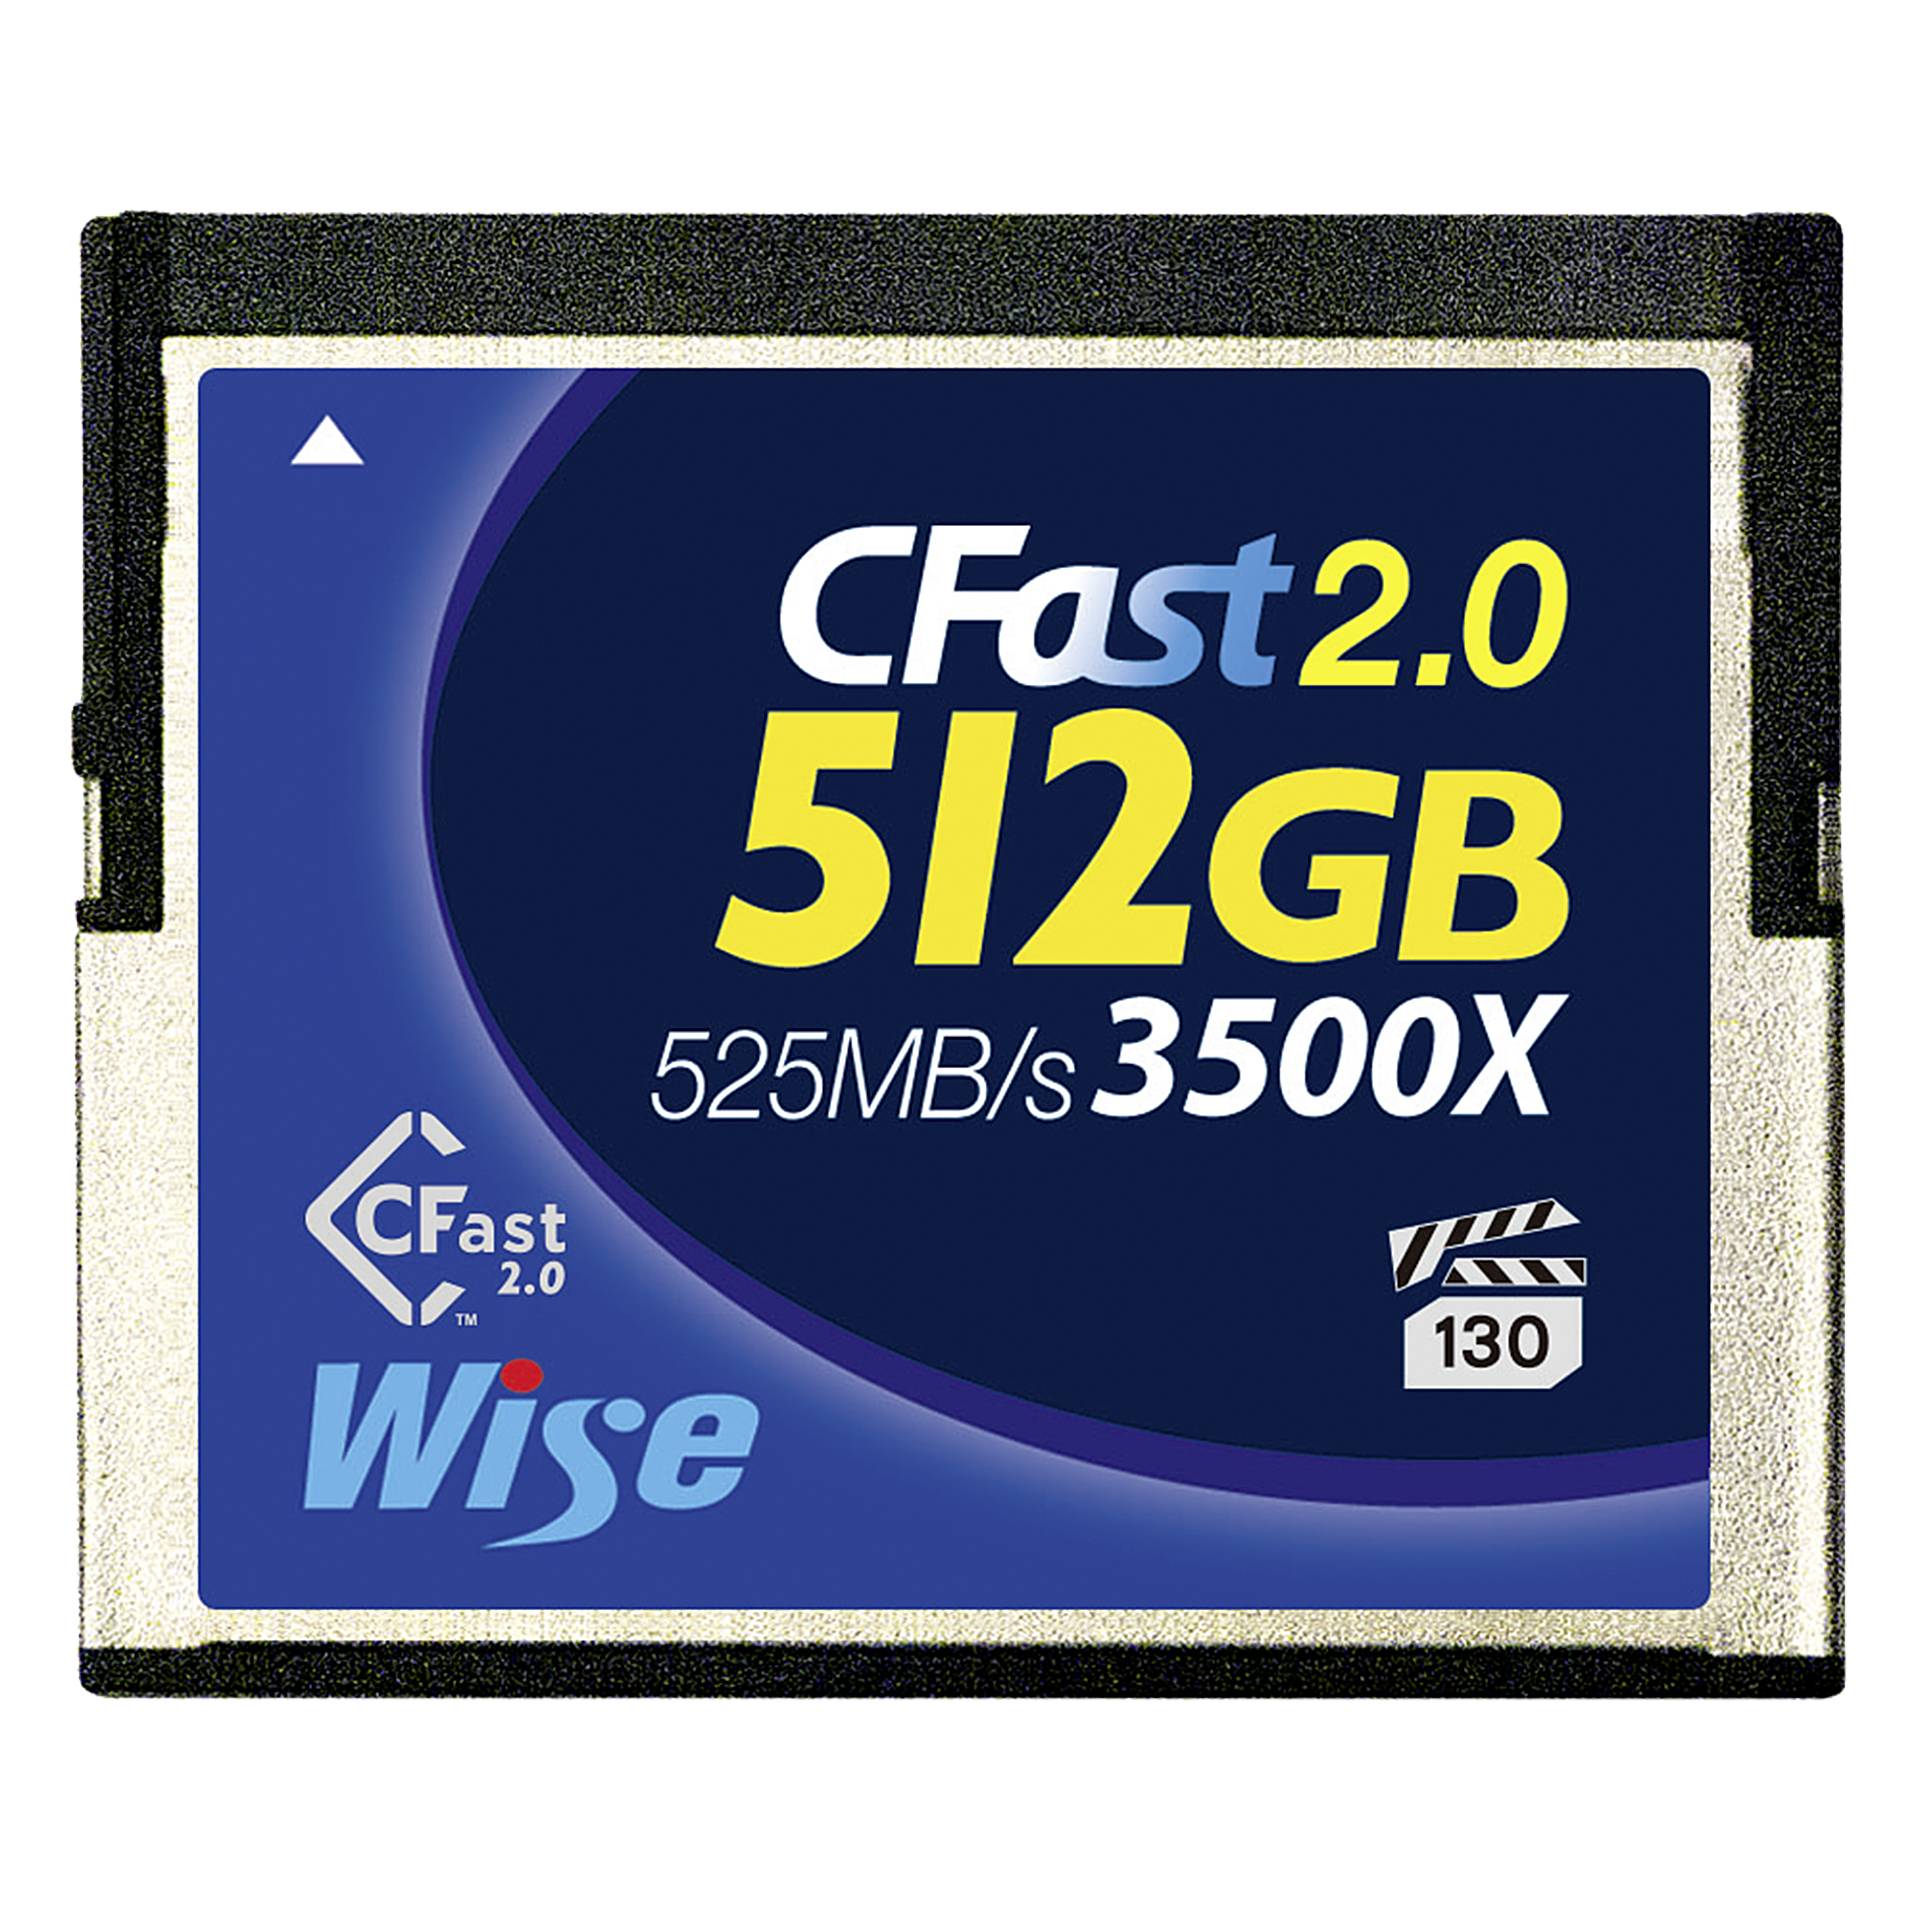 Wise CFast 2.0 Card 3500x  512GB blu